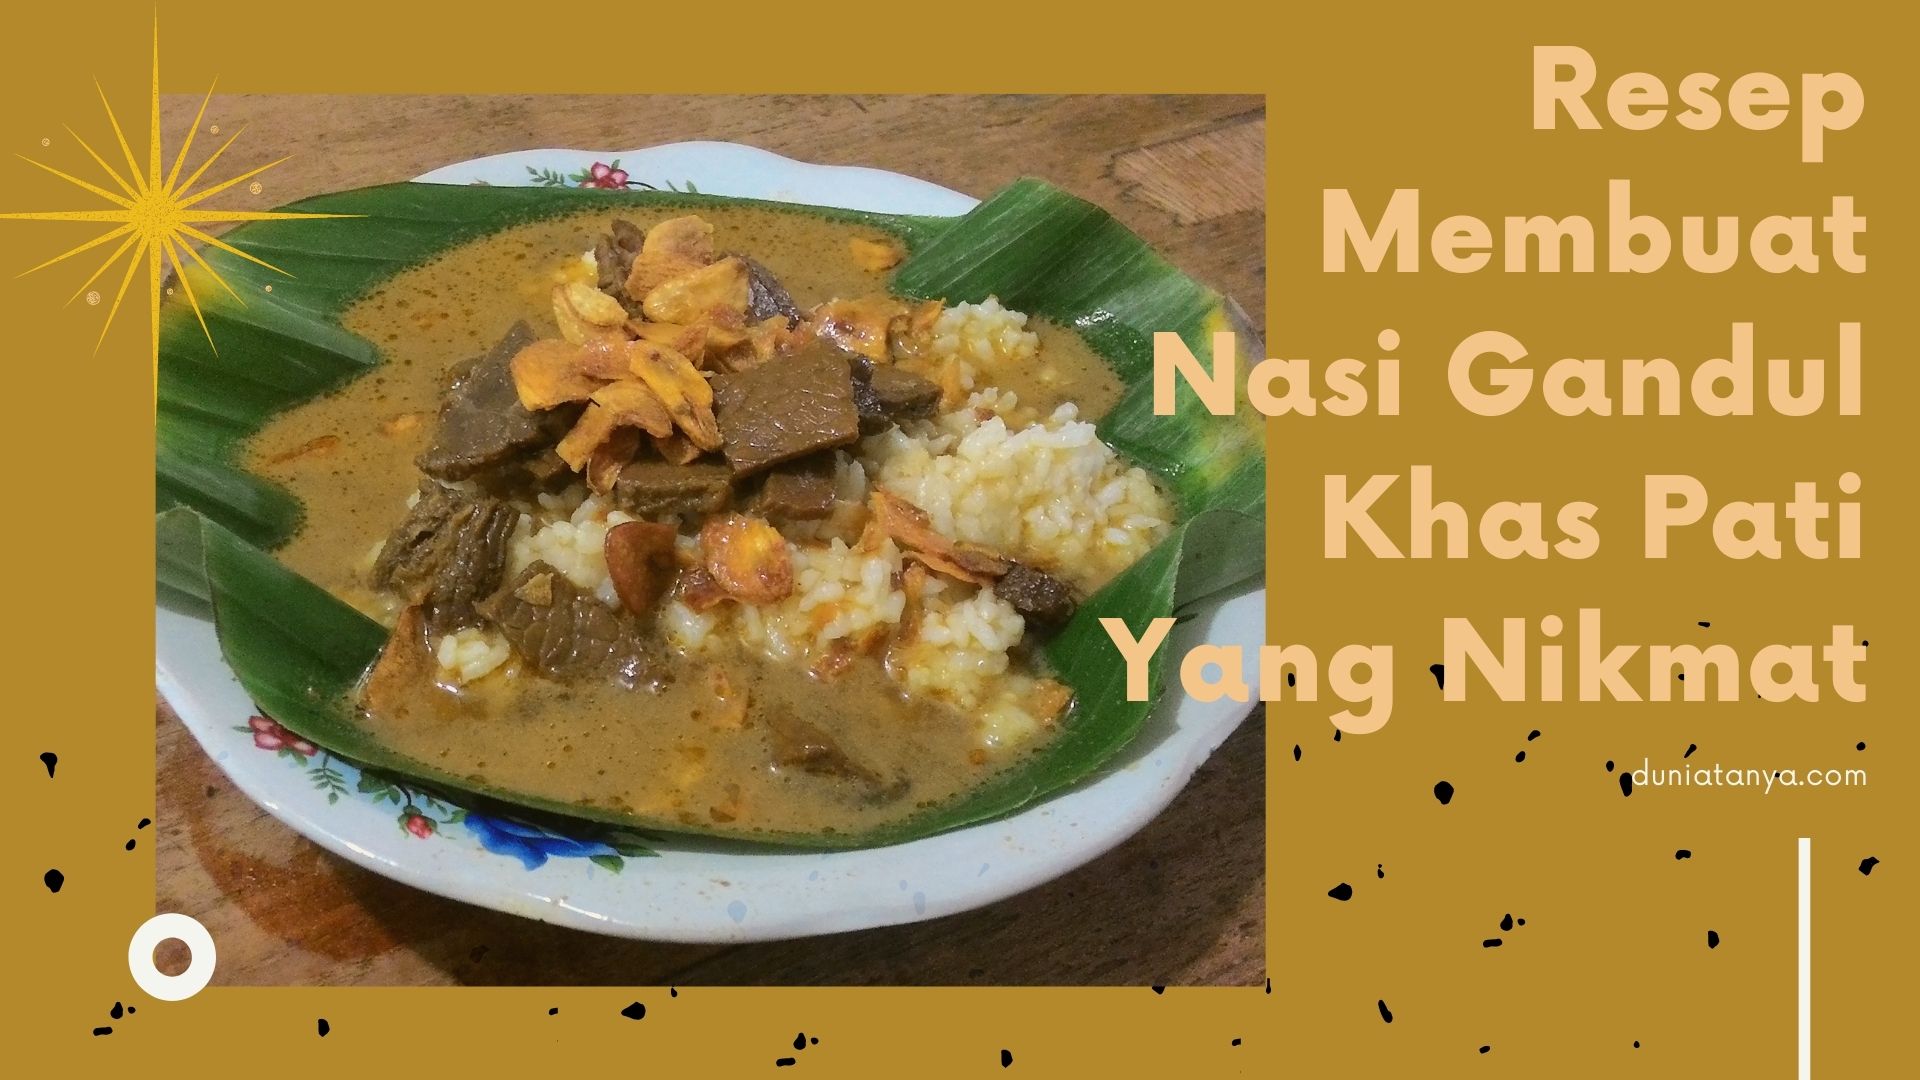 You are currently viewing Resep Membuat Nasi Gandul Khas Pati Yang Nikmat